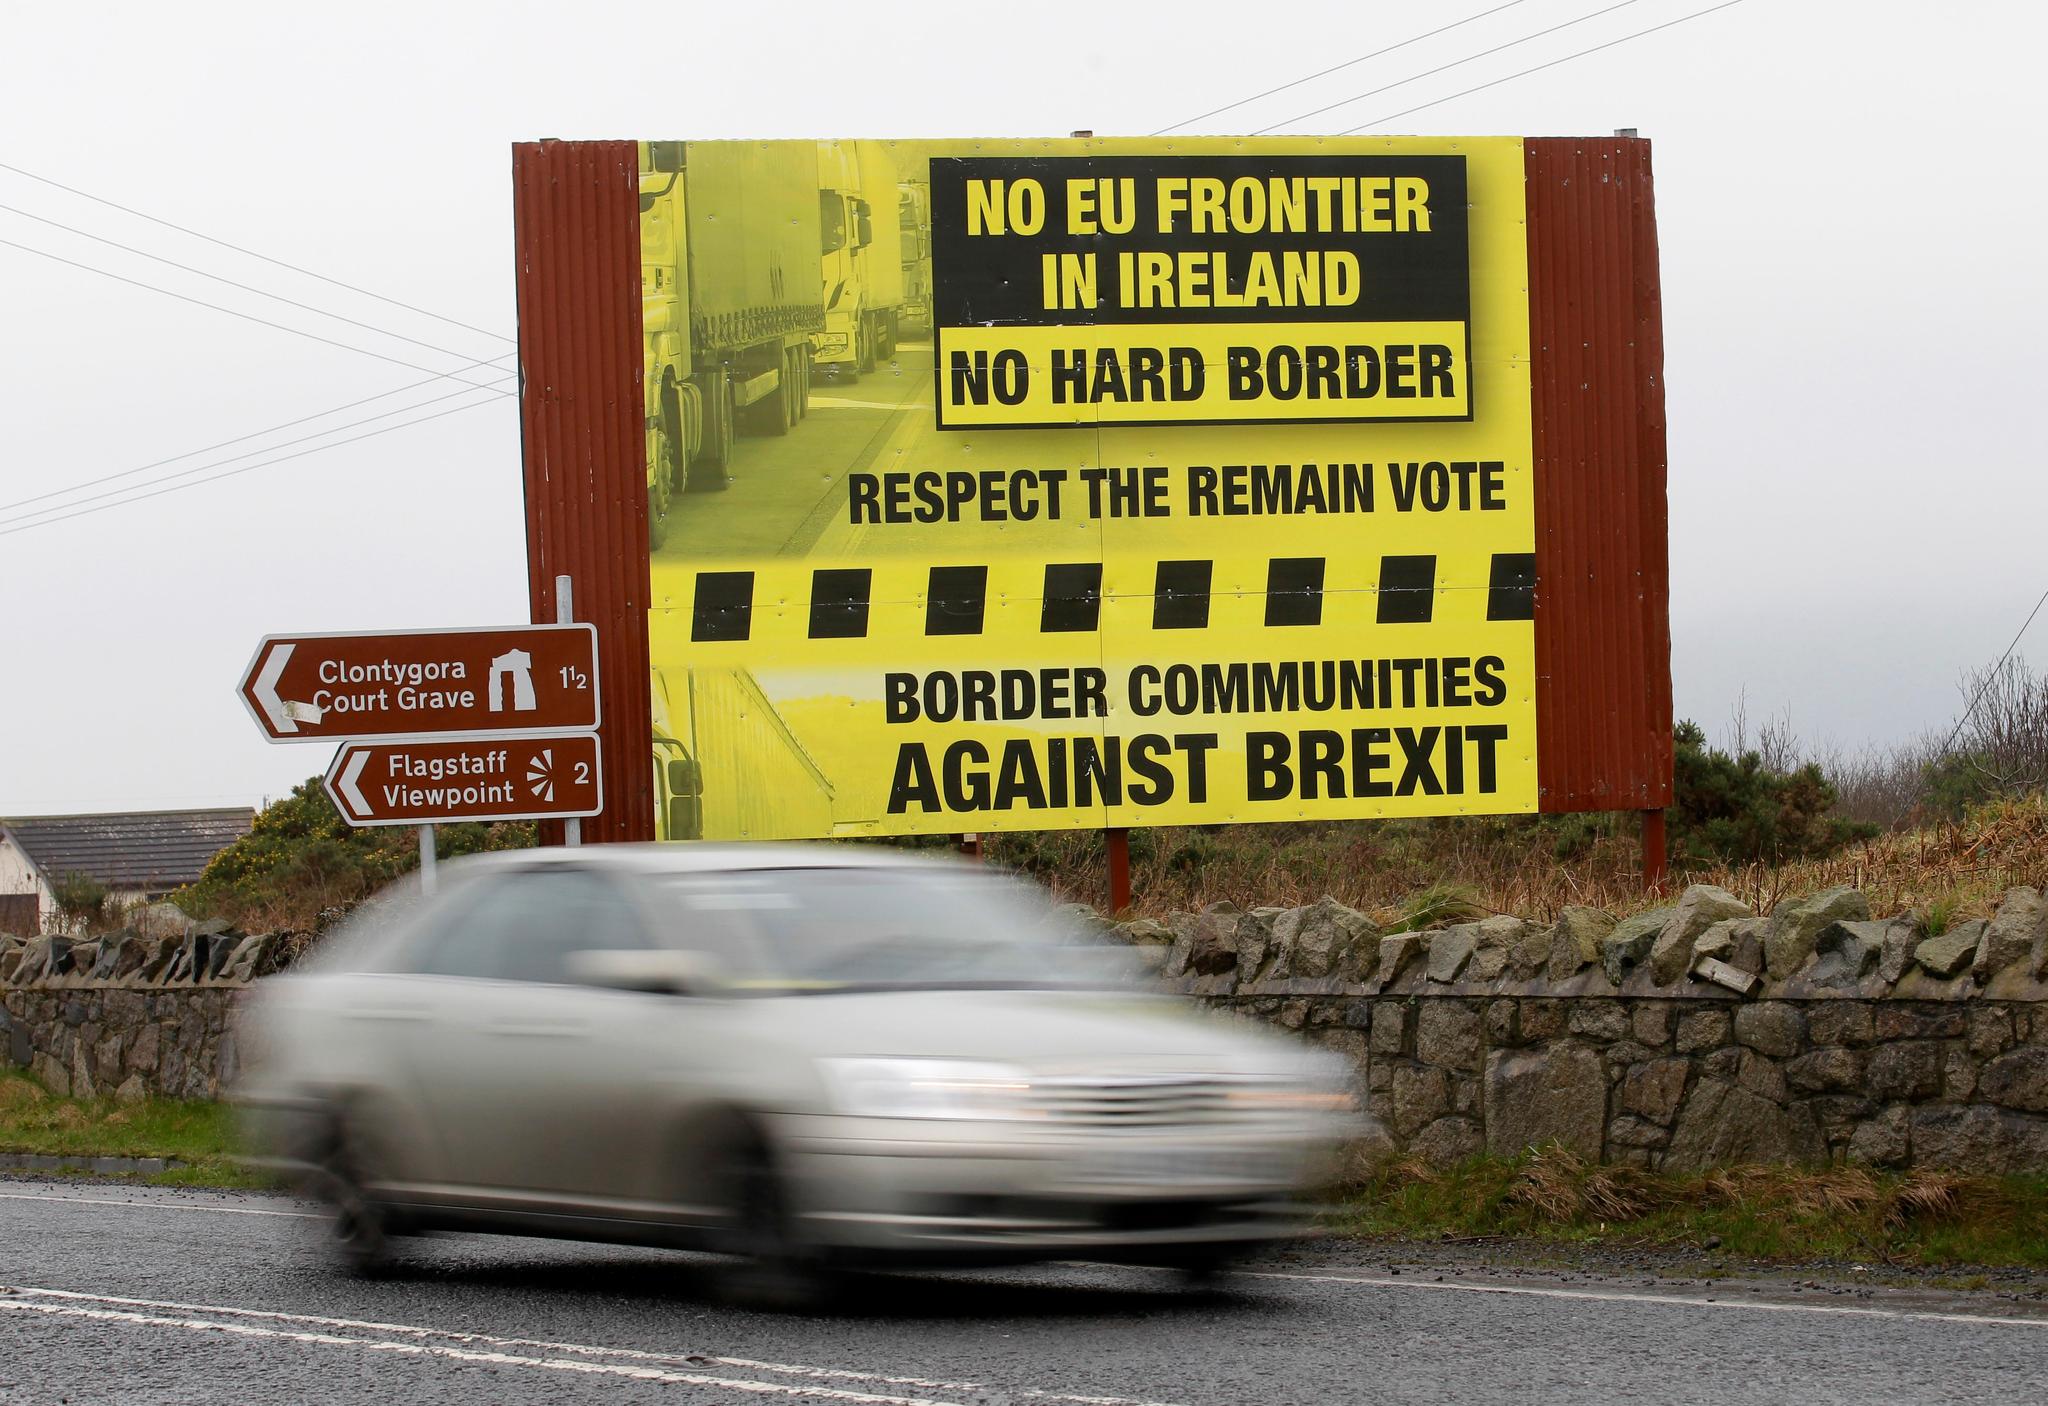 I dag finnes det ingen fysisk grense mellom Irland og Nord-Irland, som er en del av Storbritannia. Årsaken er at begge landene er med i EU. Men hvordan dette skal løses etter Brexit er uklart, og det er frykt for at et fysisk grenseskille kan rippe opp i den betente og konflikteten som har preget øya i mange år.